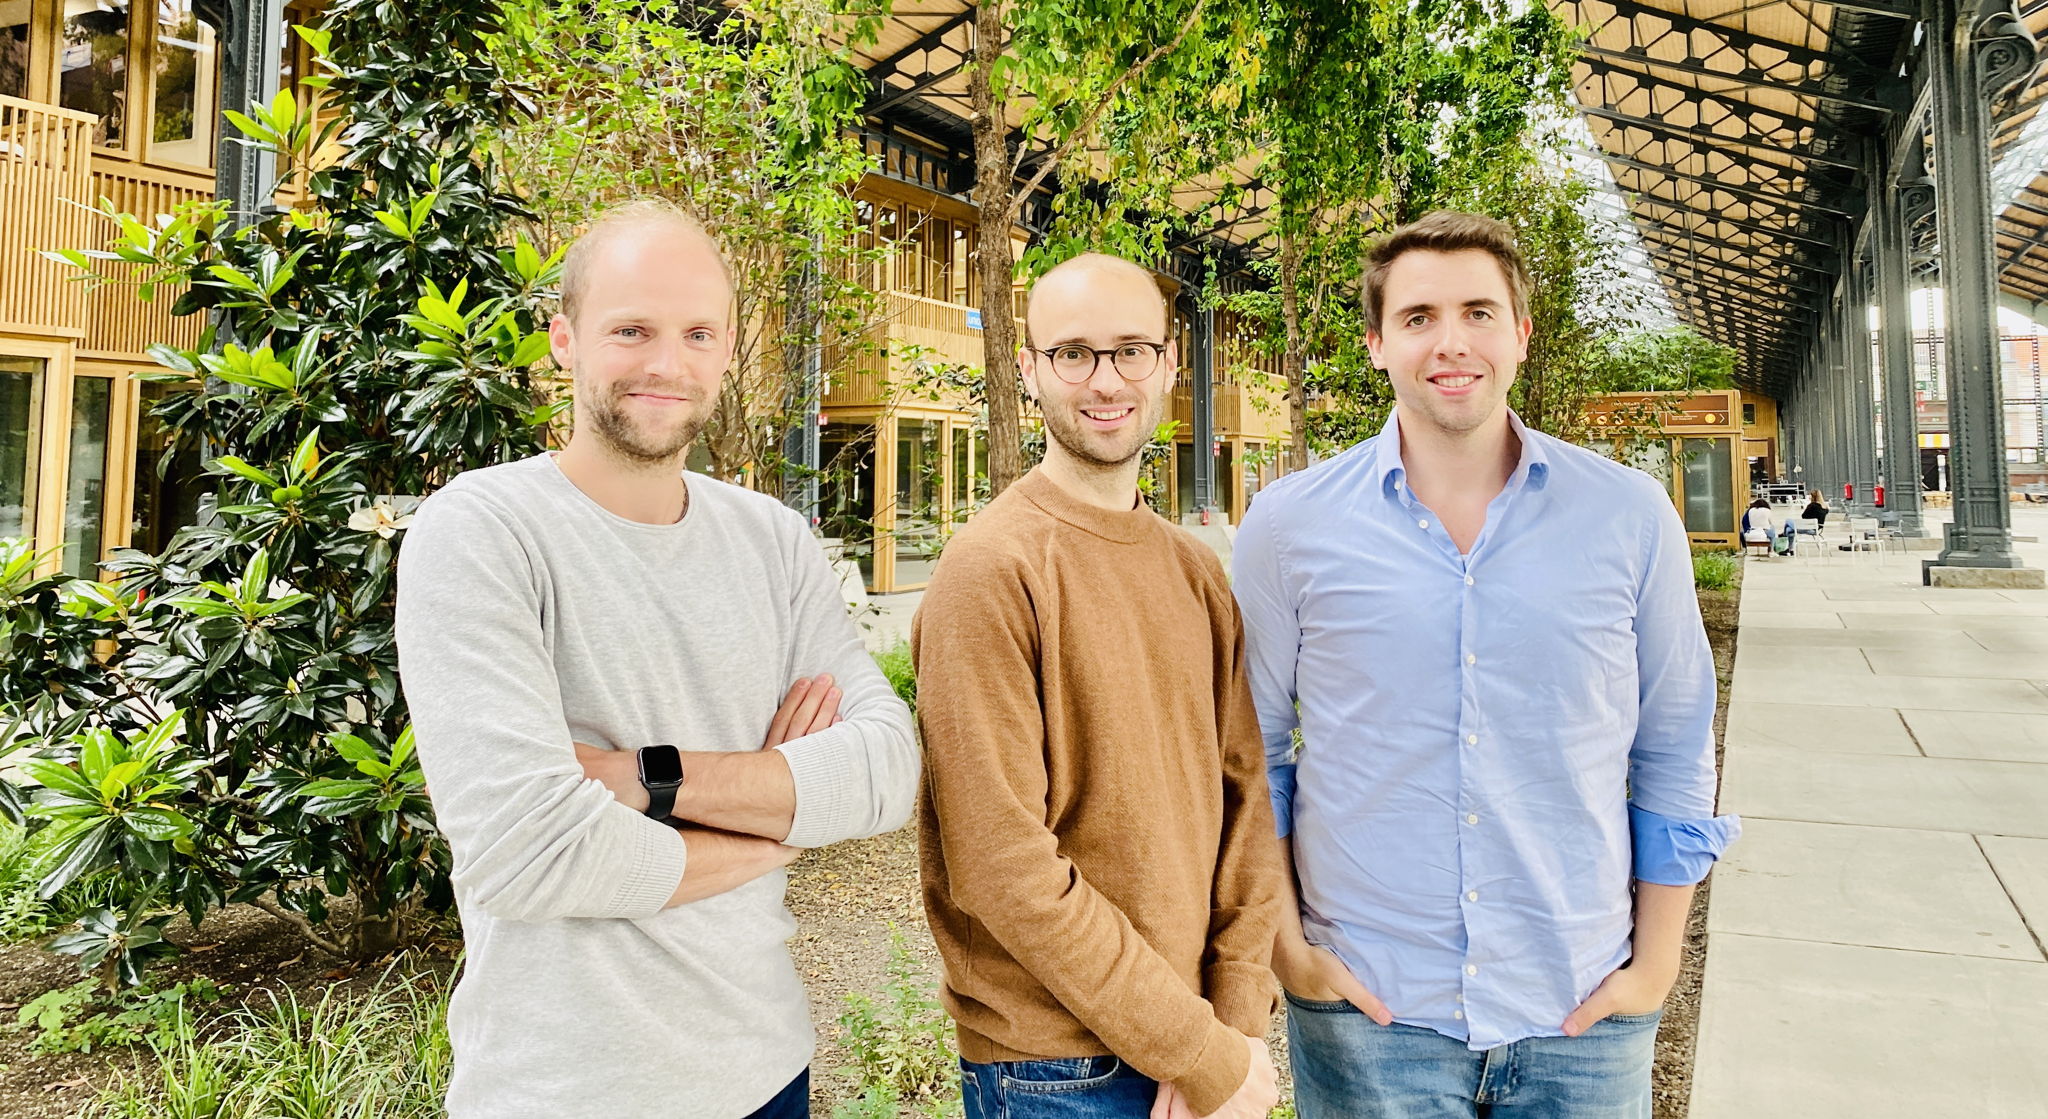 De oprichters van Smooved. vlnr: Laurens Vanpoucke, Ignace Buelens, Nathan Coox